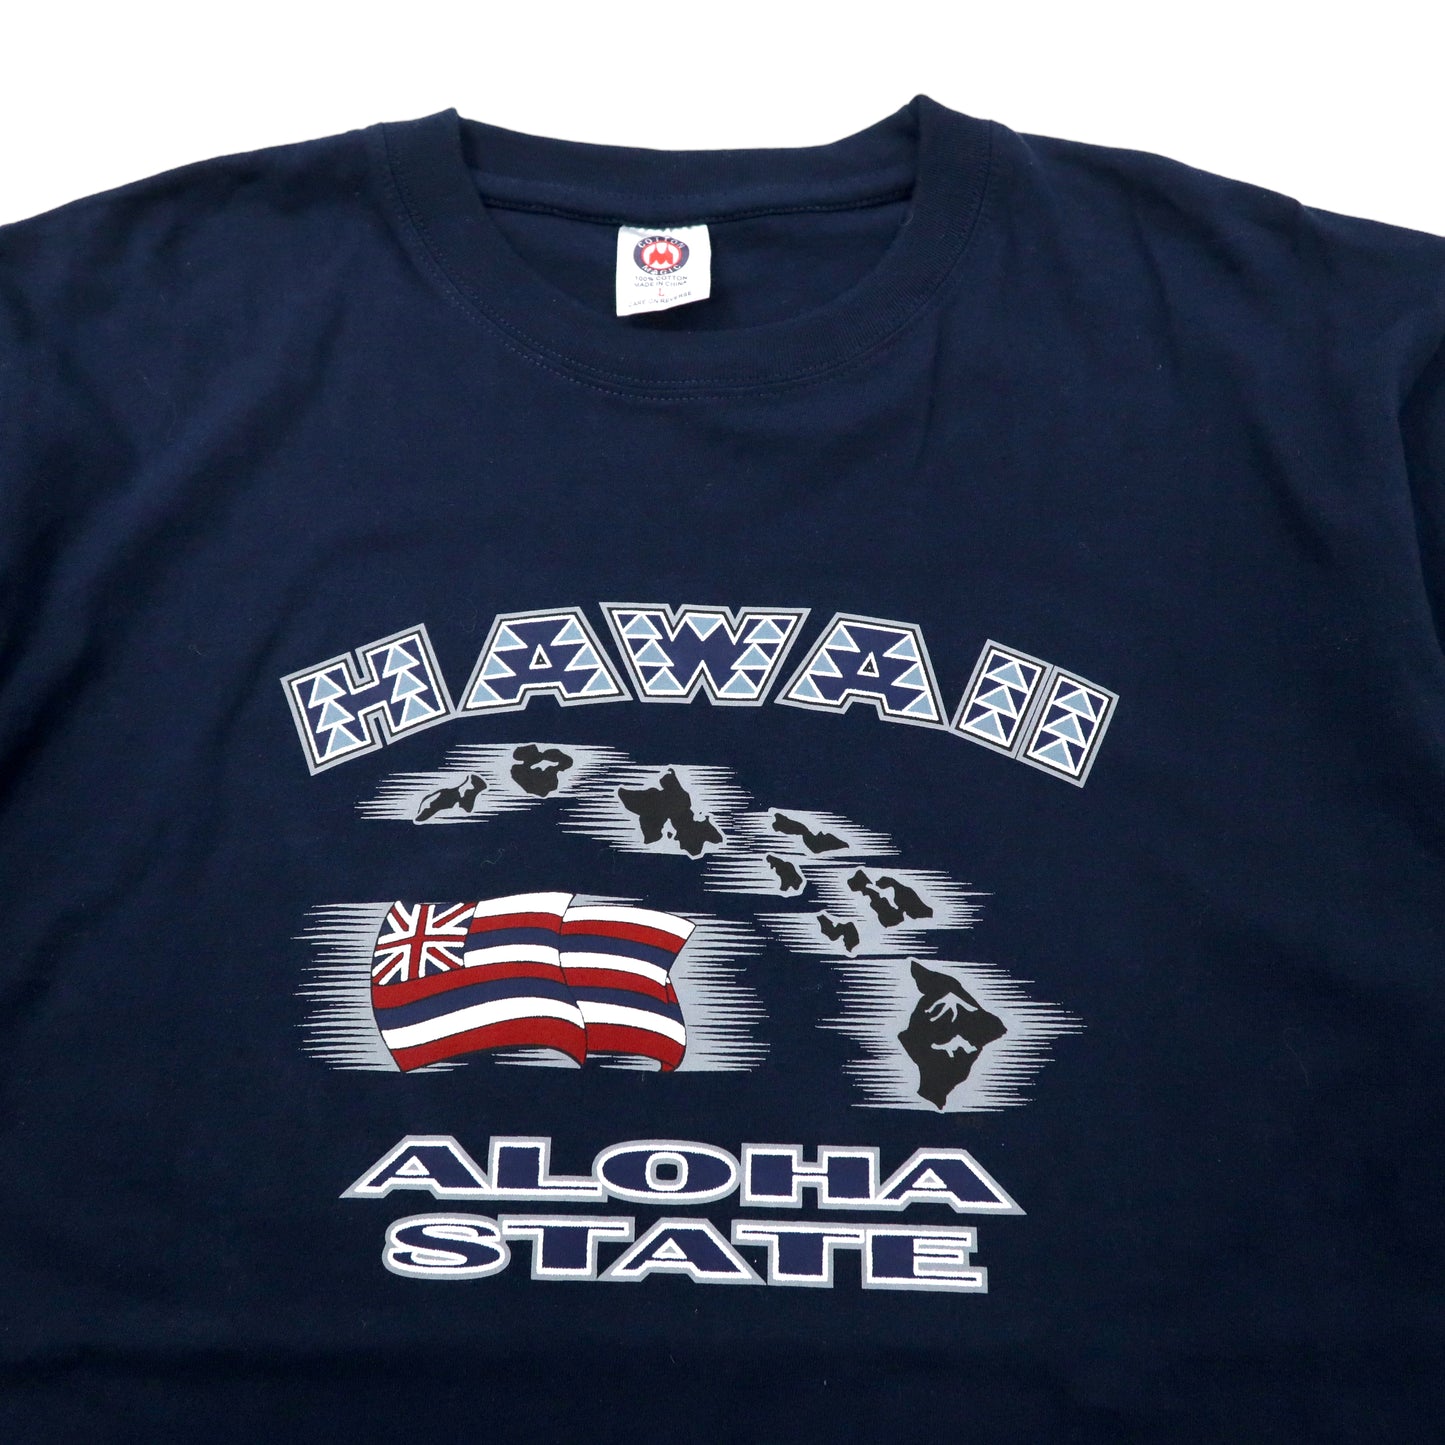 COTTON MAGIC ビッグサイズ プリントTシャツ L ネイビー コットン HAWAII ALOHA STATE